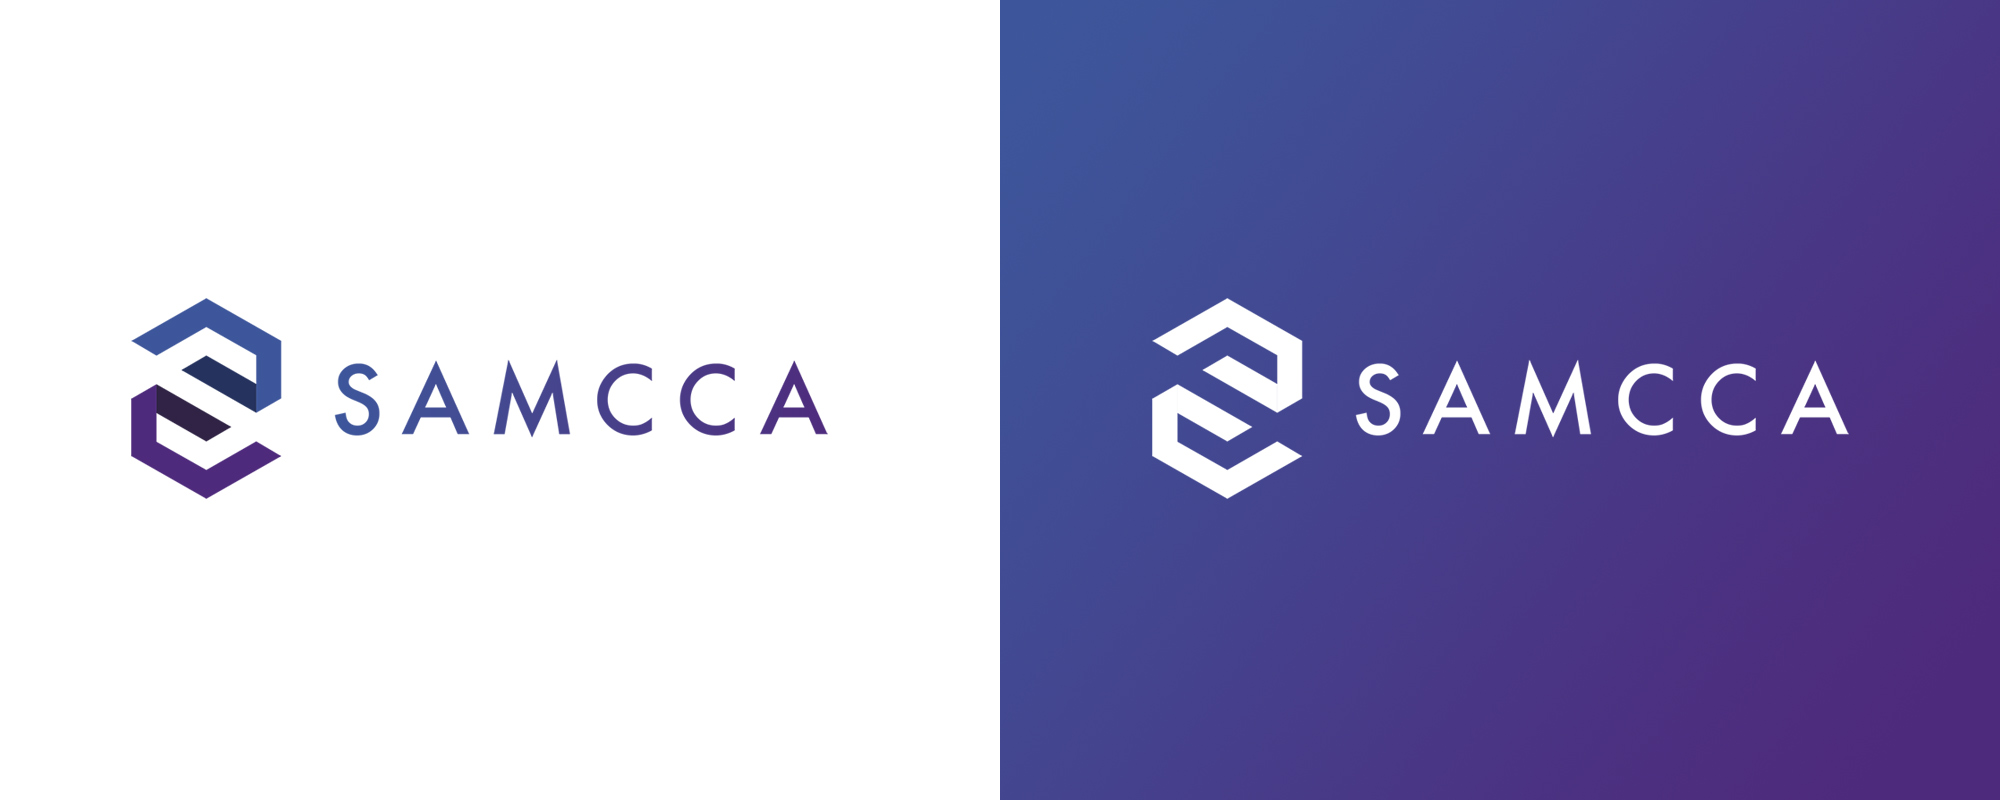 Logo Samcca